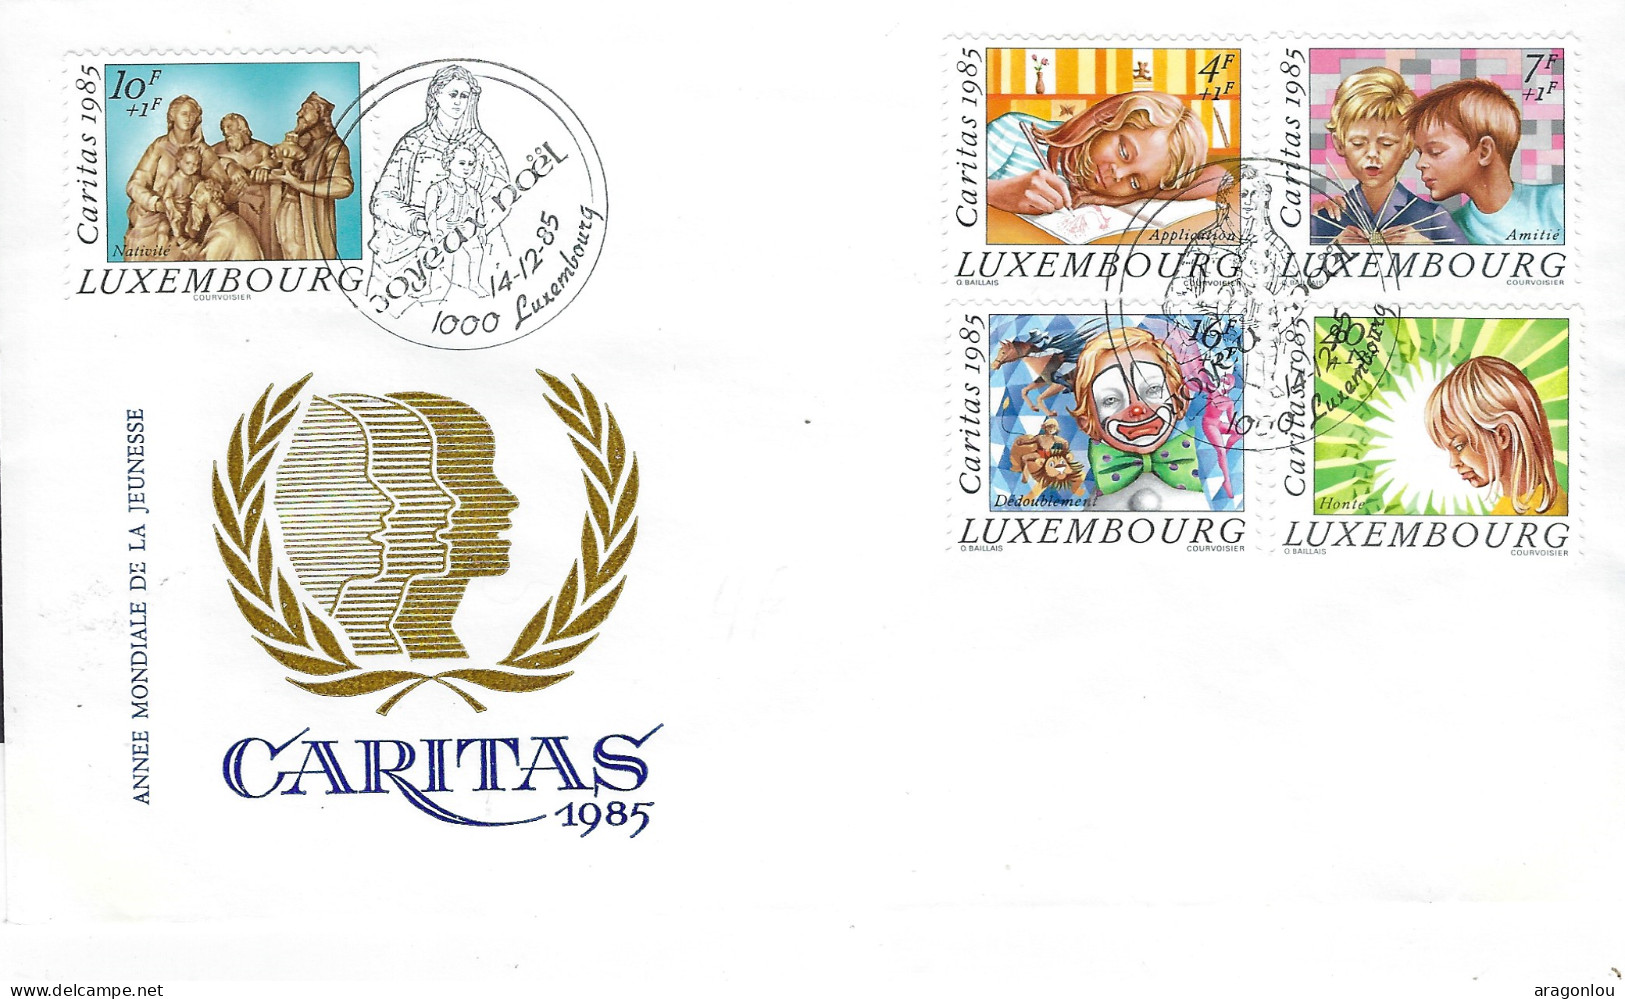 Luxembourg - Luxemburg - Lettre    1985  Caritas   Année Mondiale De La Jeunesse - Covers & Documents